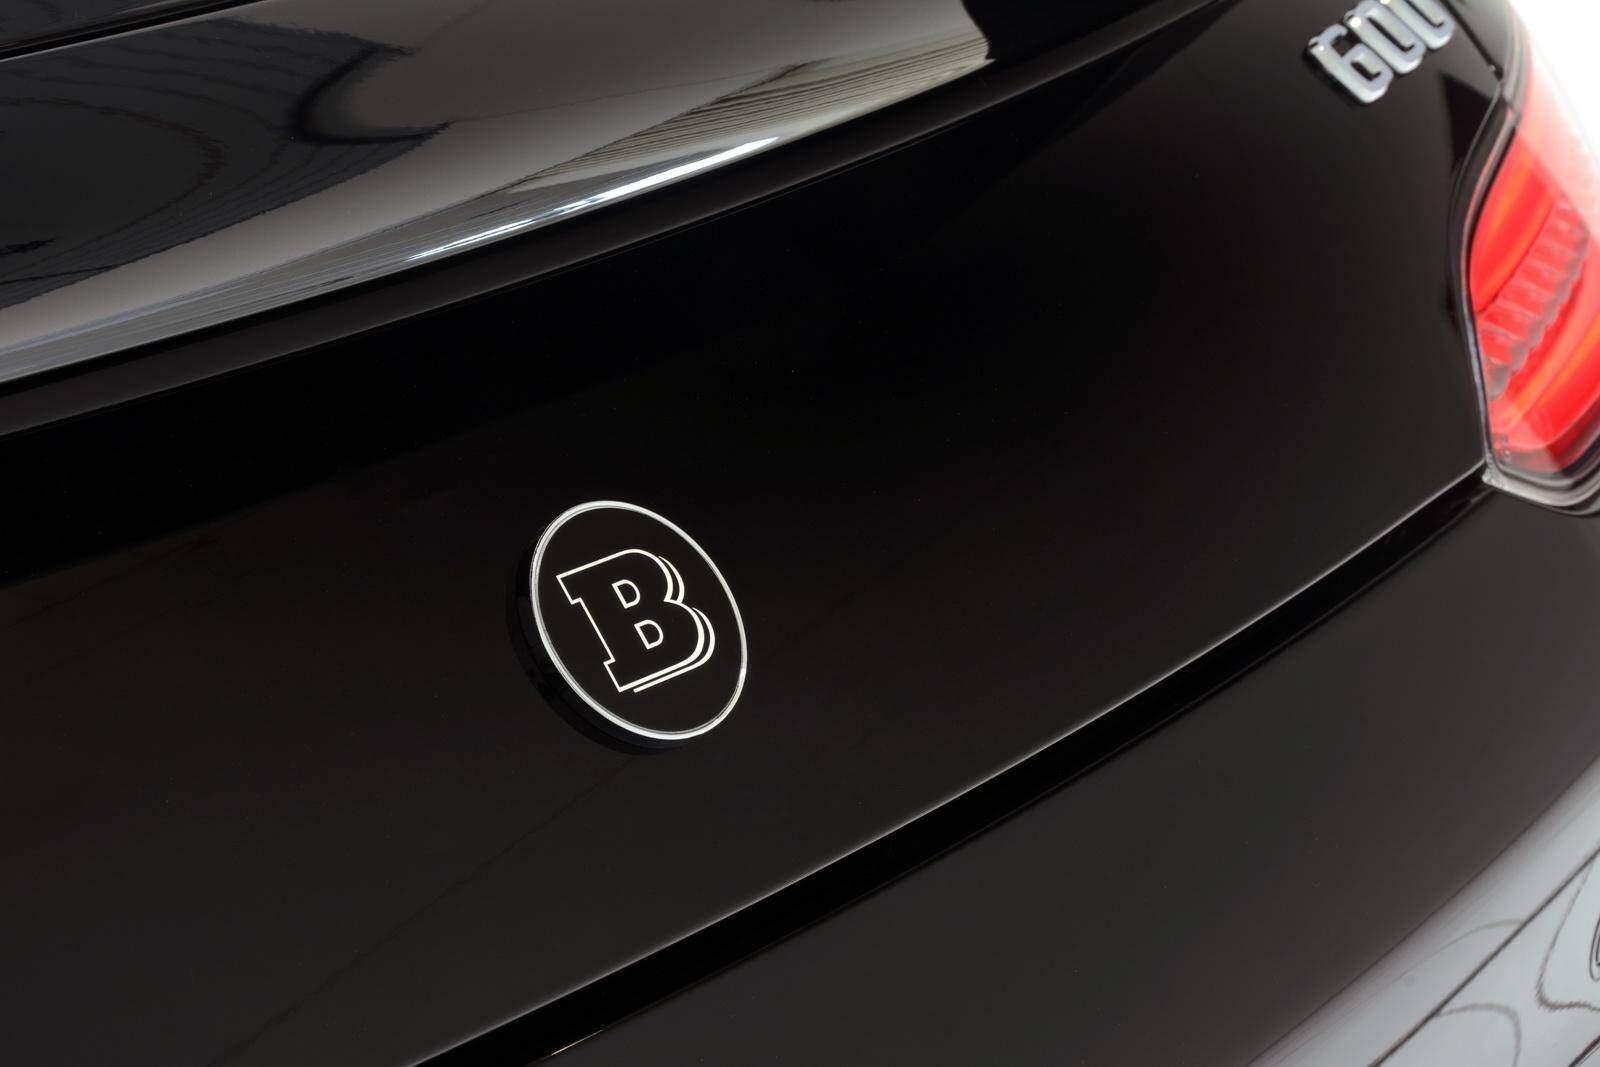 Brabus GT S (2015-2017),  ajouté par Raptor